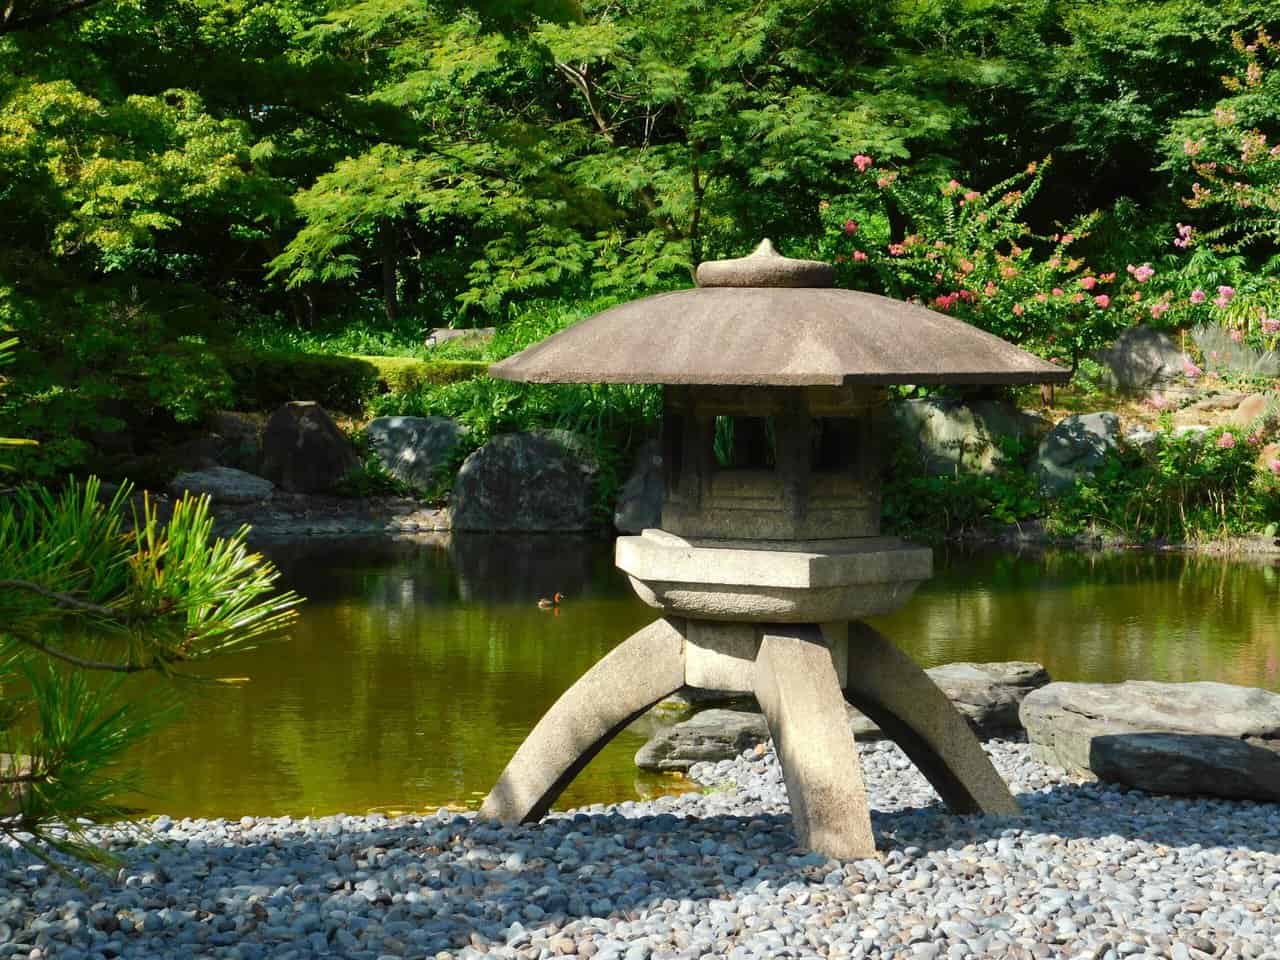 Stone lantern in a Japanese garden.